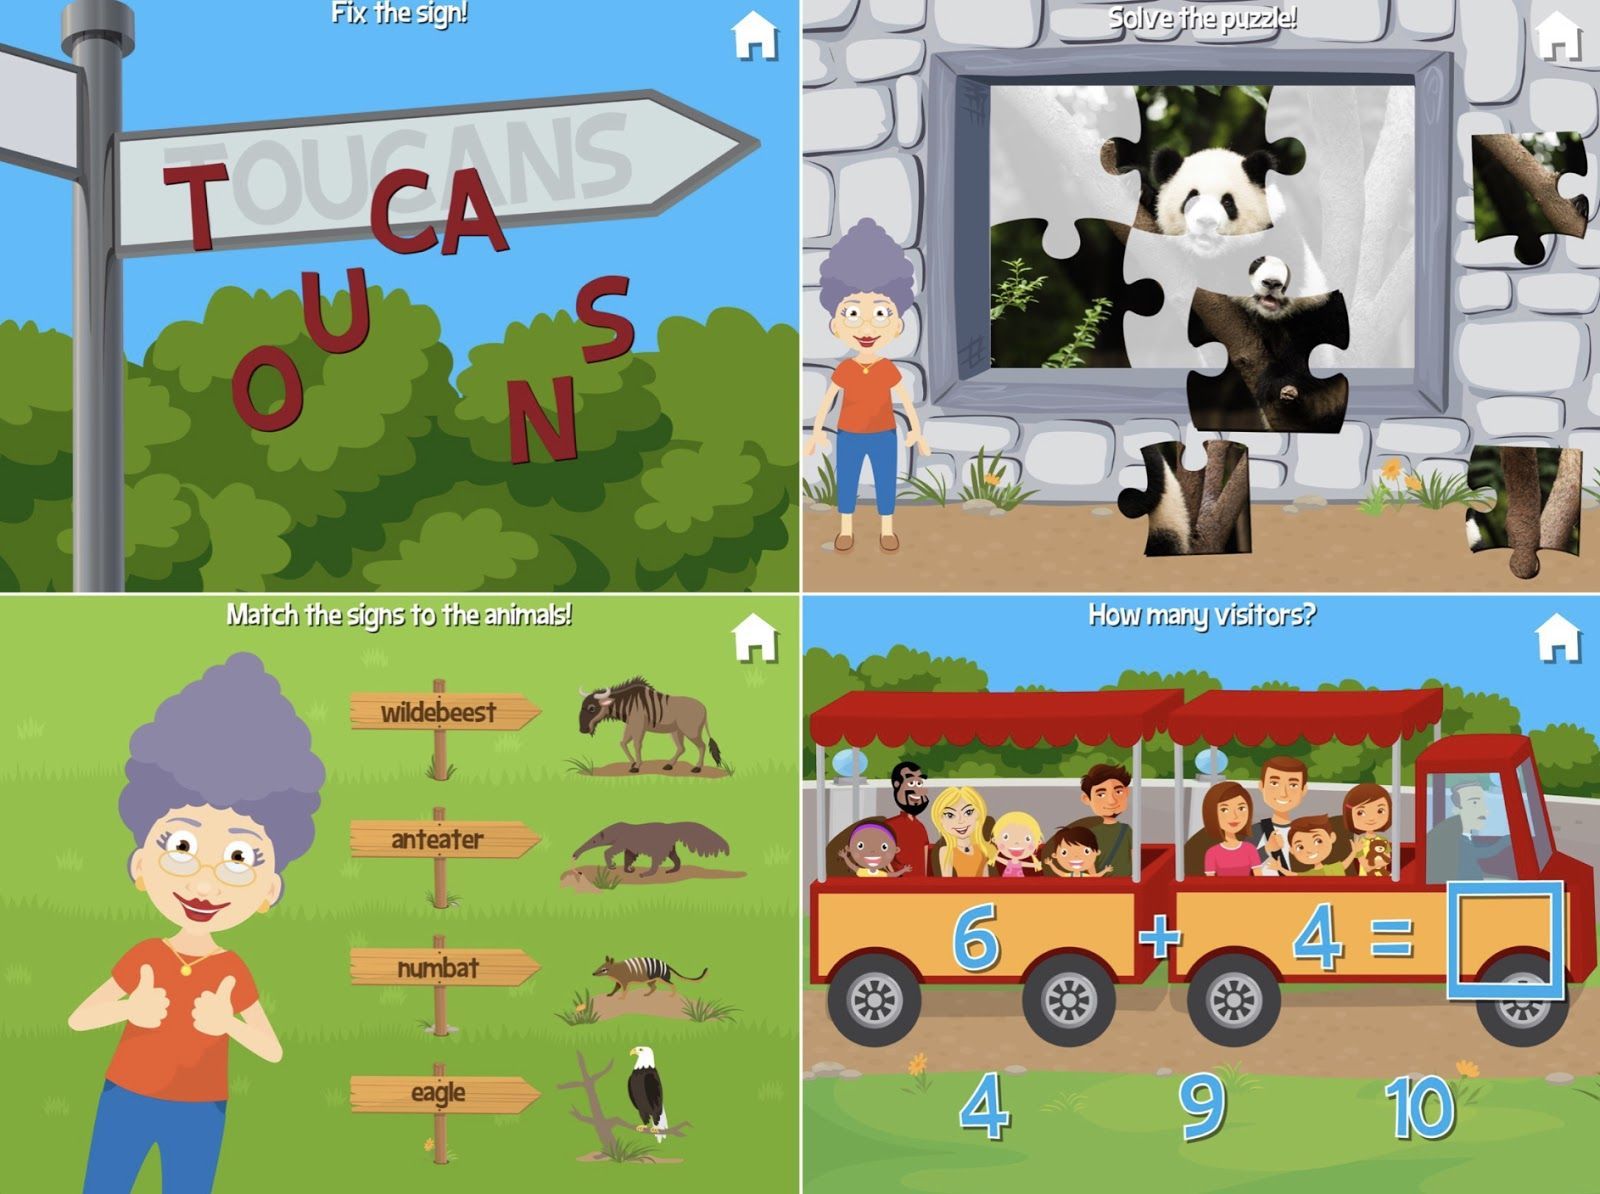 Best Multi-Educational Apps For Kindergarten